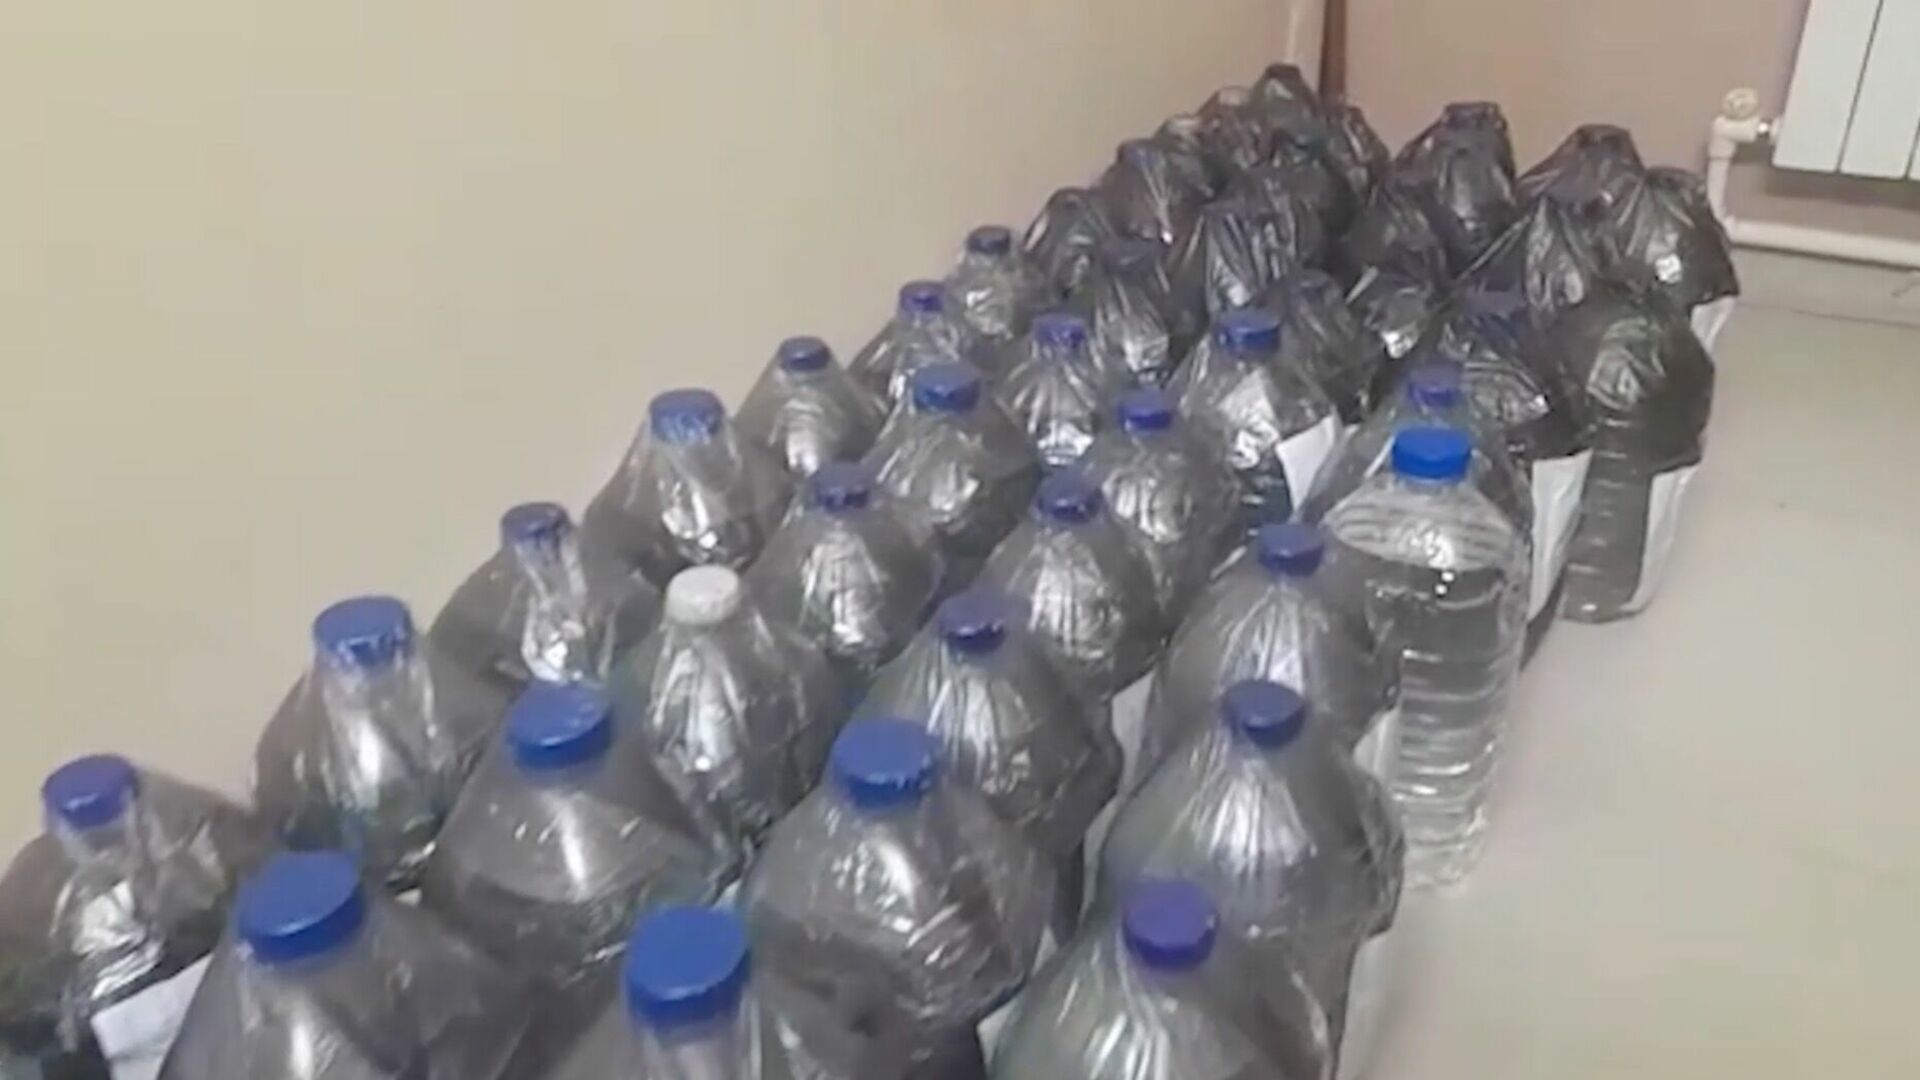 В гараже челнинца нашли тысячи литров паленого алкоголя